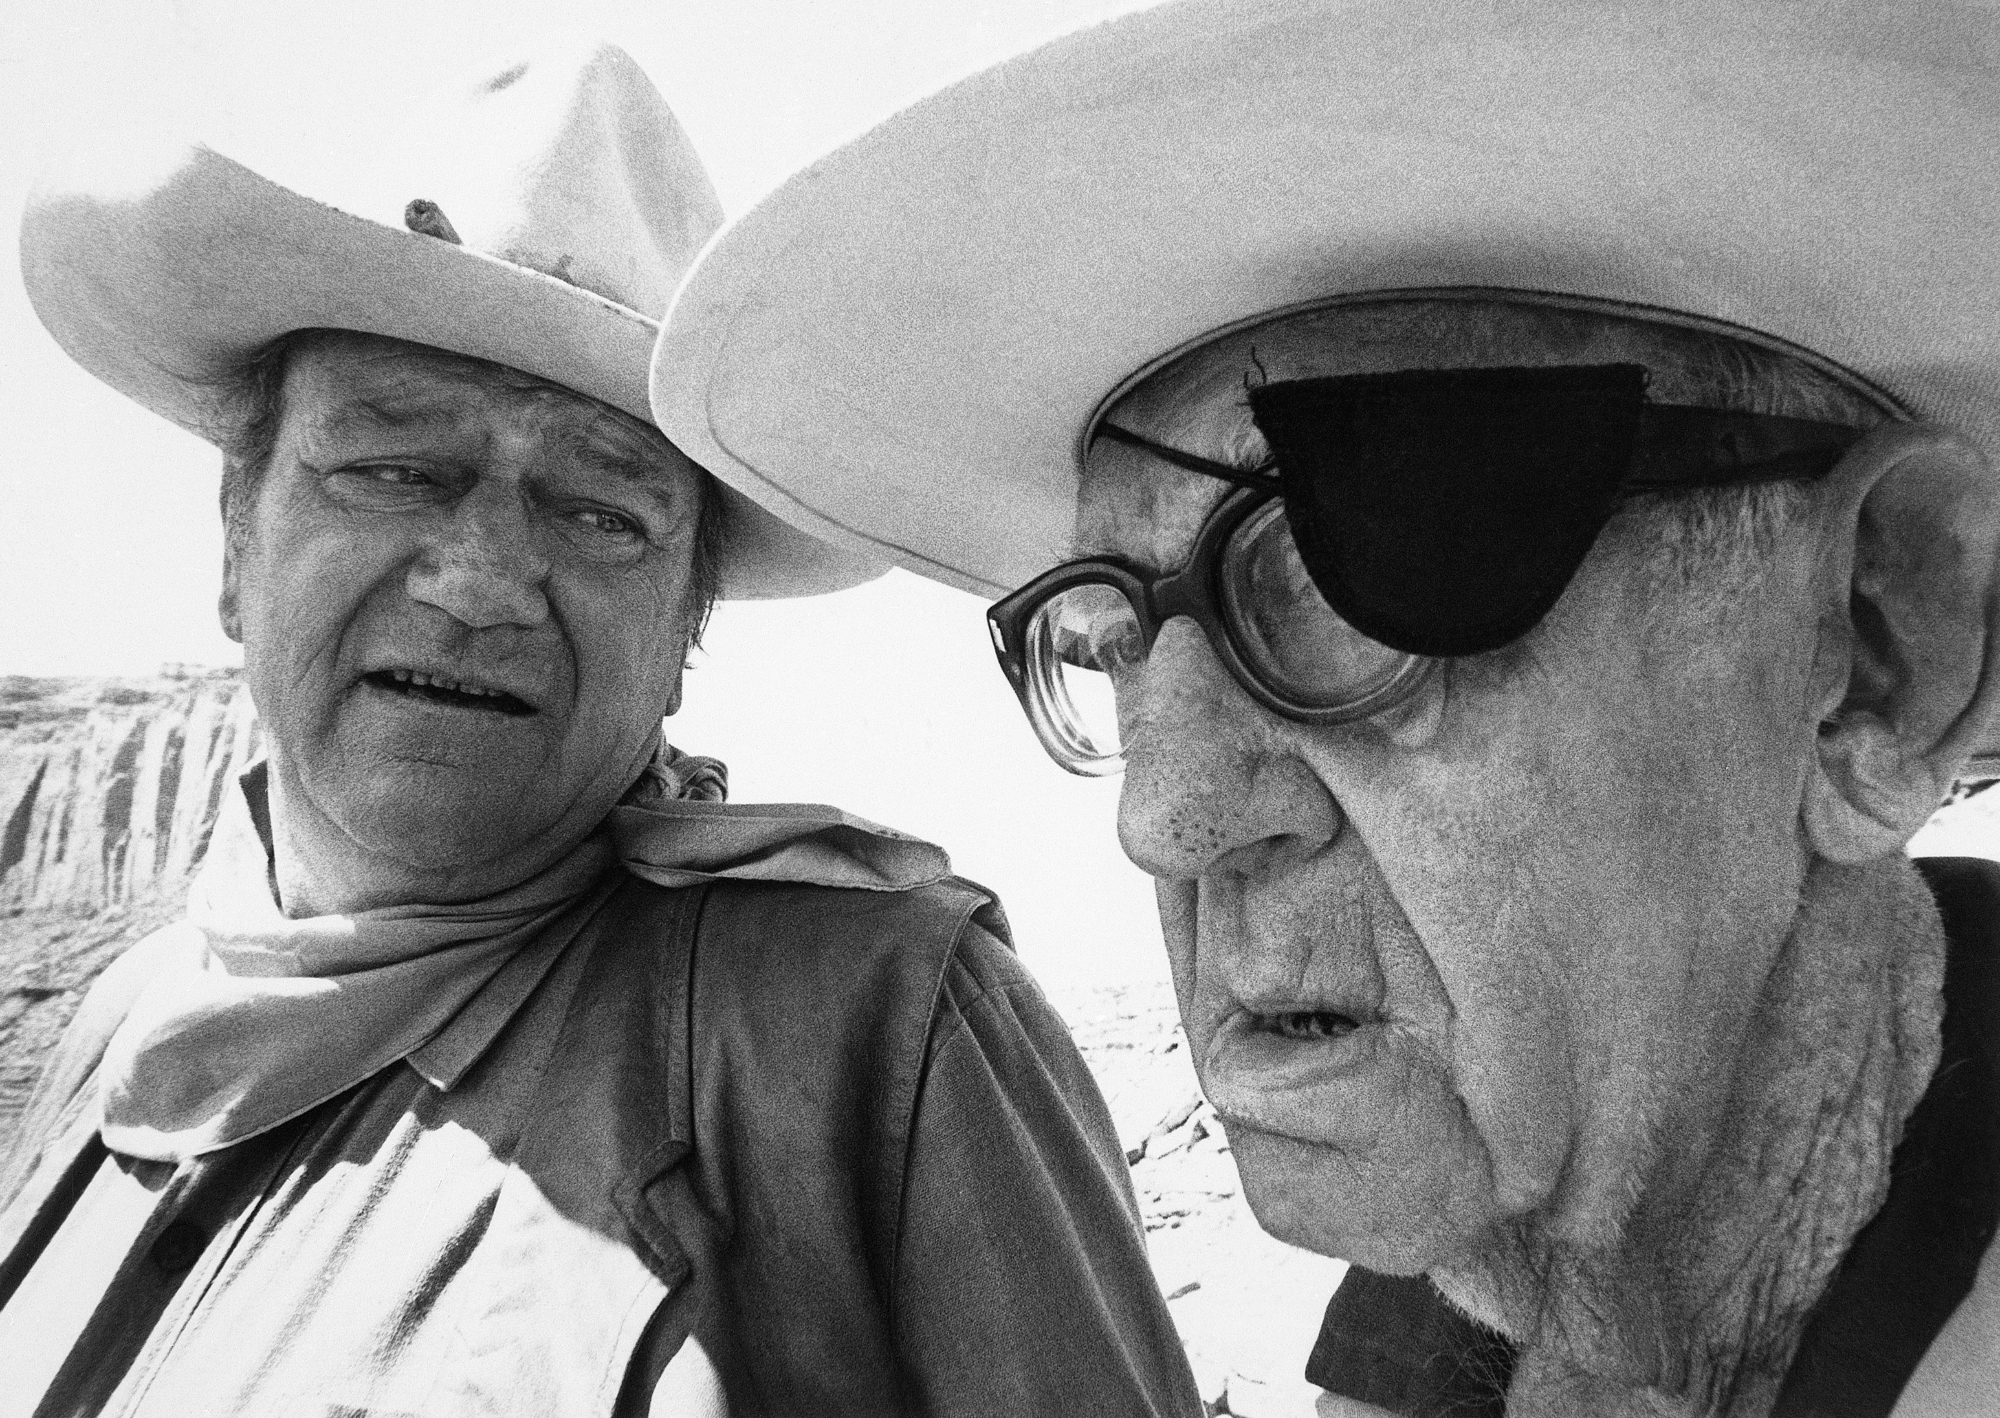 John Wayne and John Ford talking while wearing cowboy hats